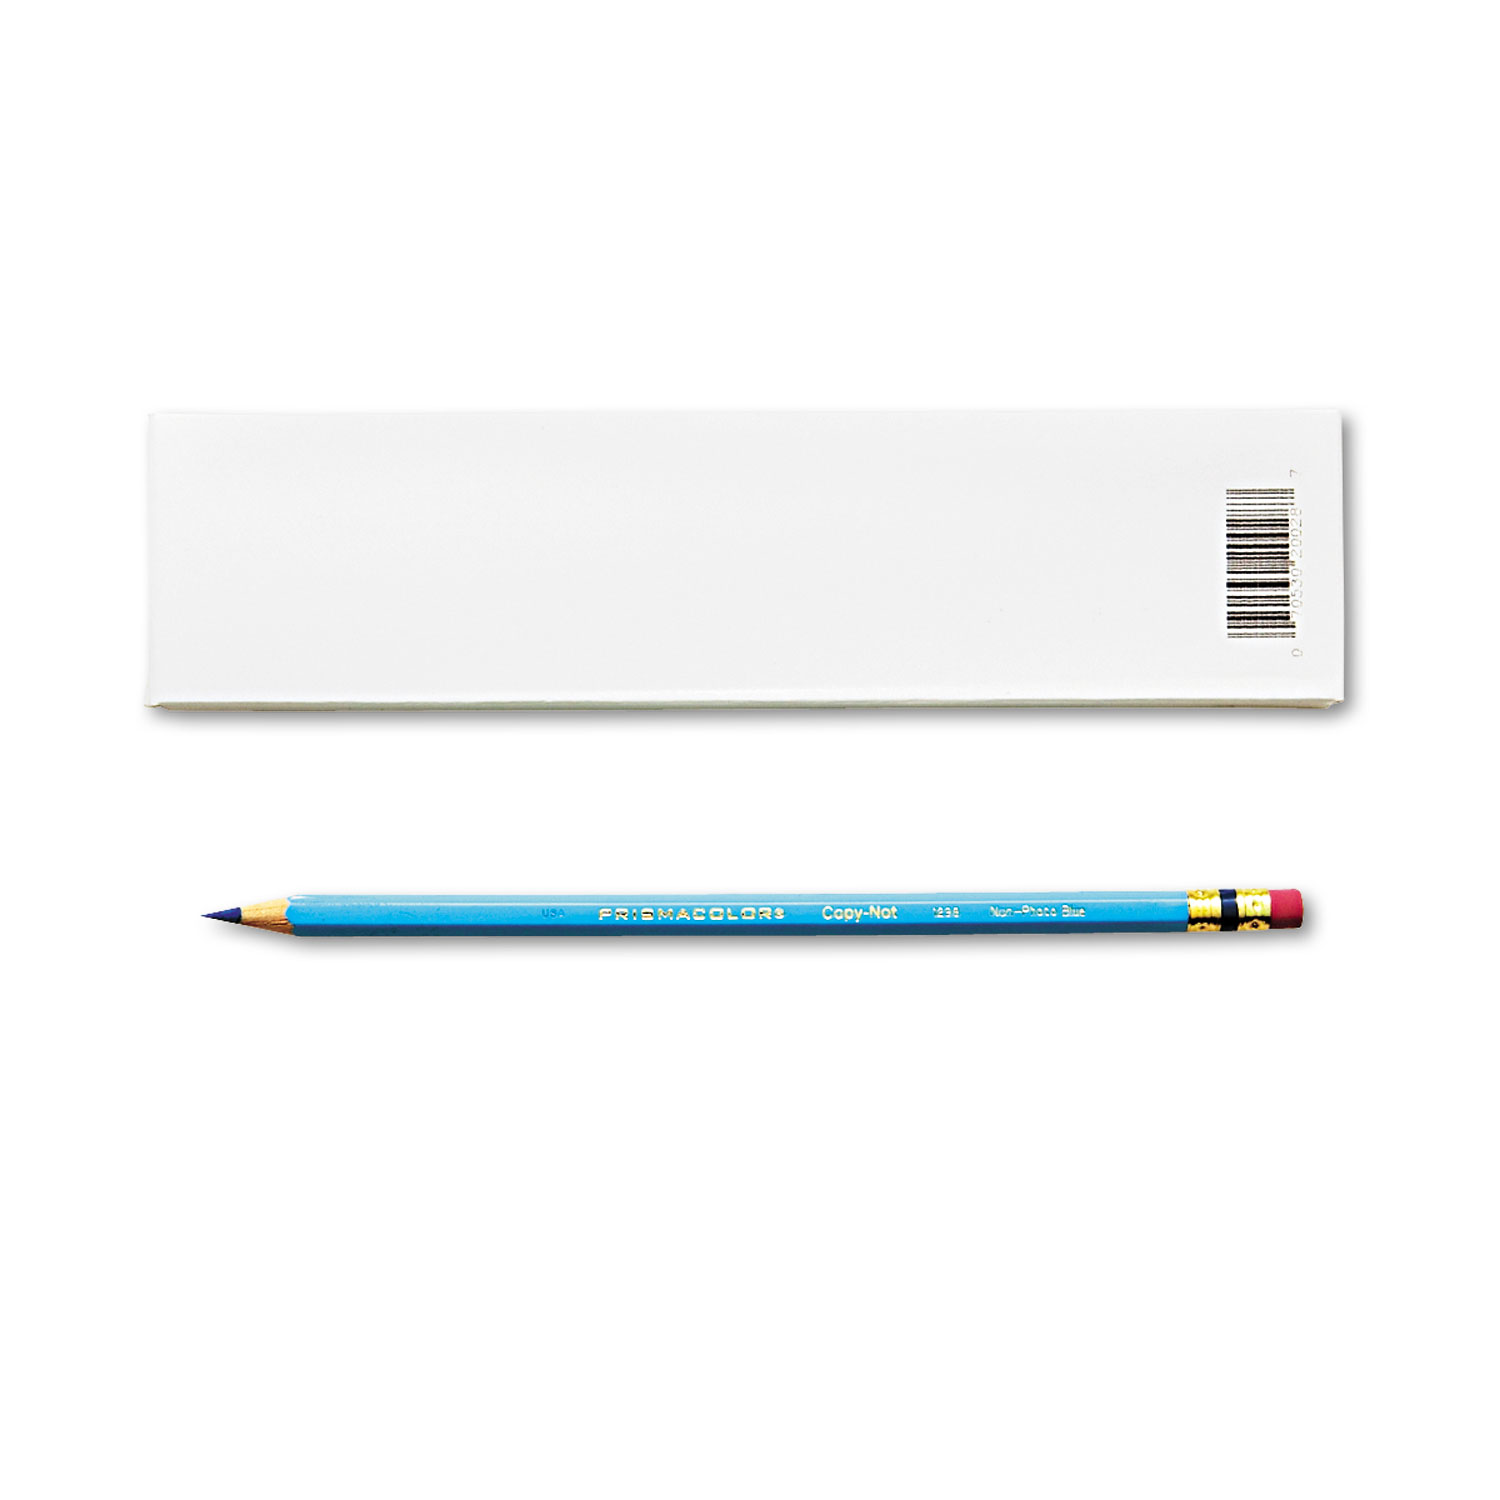  Prismacolor 20028 Col-Erase Pencil with Eraser, 0.7 mm, 2B (#1), Non-Photo Blue Lead, Non-Photo Blue Barrel, Dozen (SAN20028) 